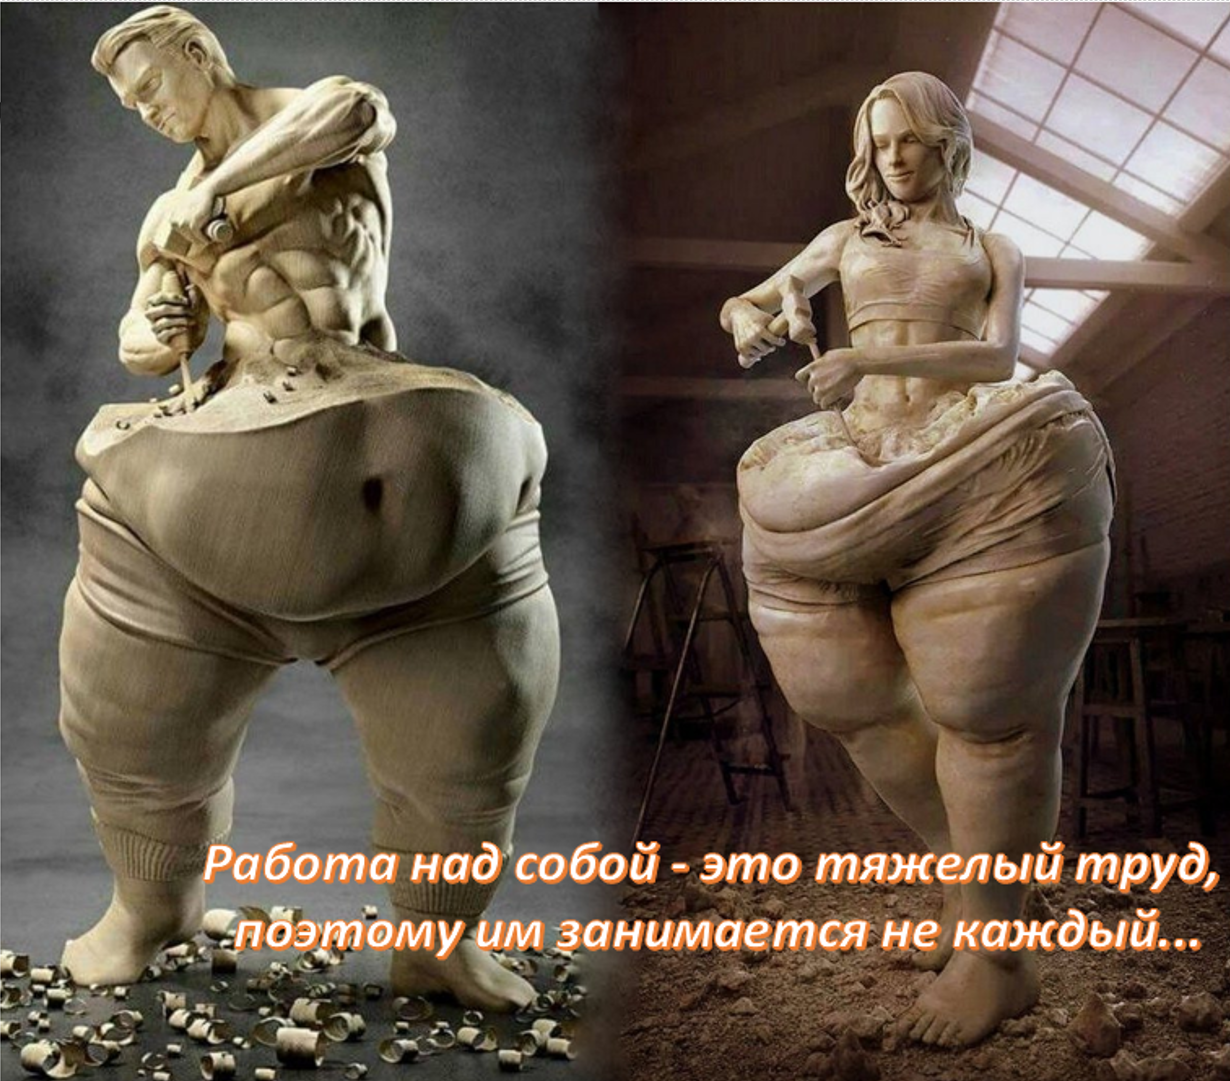 4 Марта - Всемирный день борьбы с ожирением!